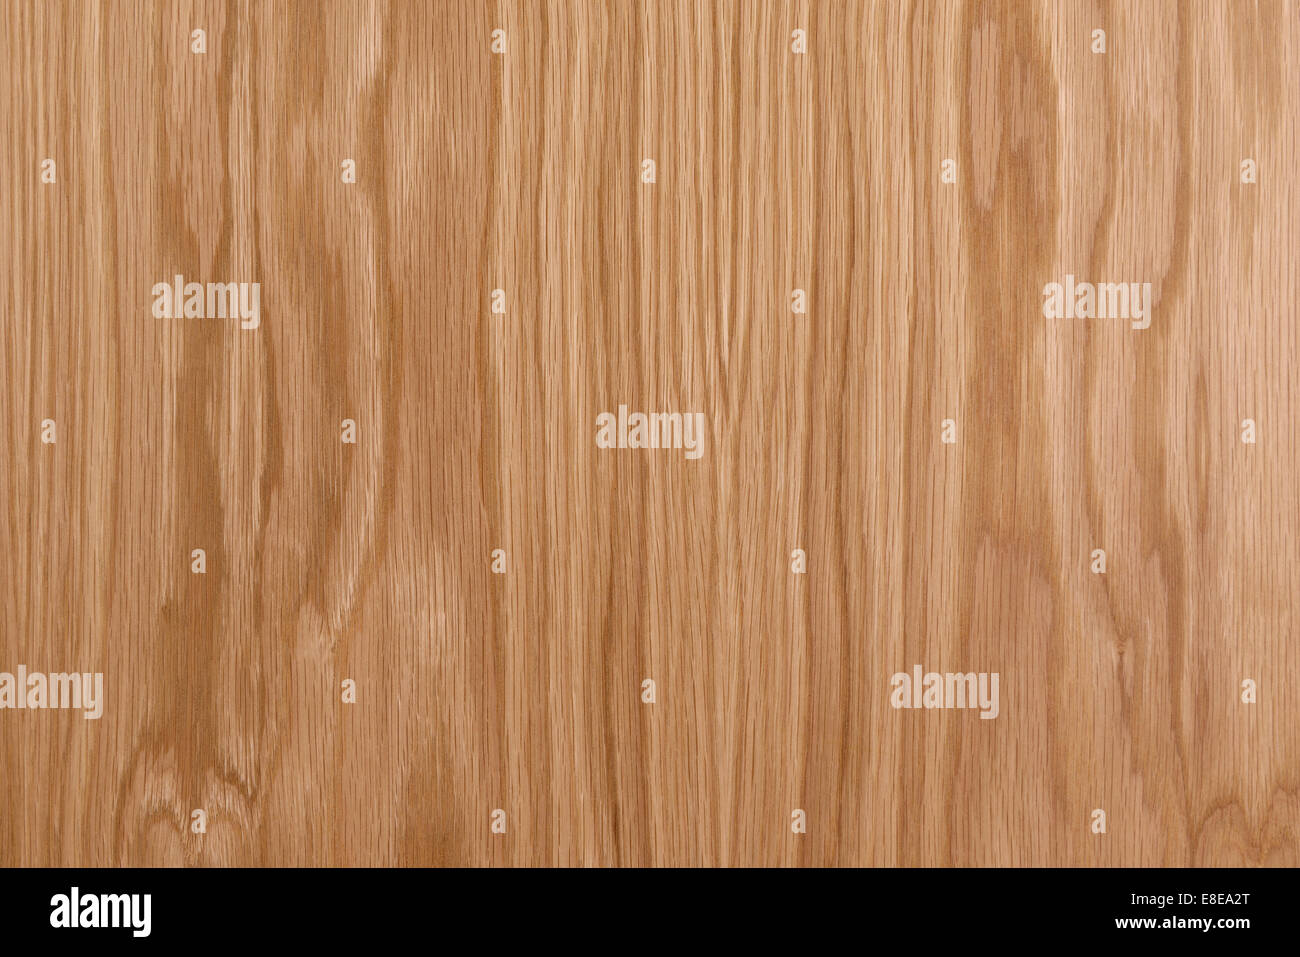 Oak veneer wood pattern detail Stock Photo